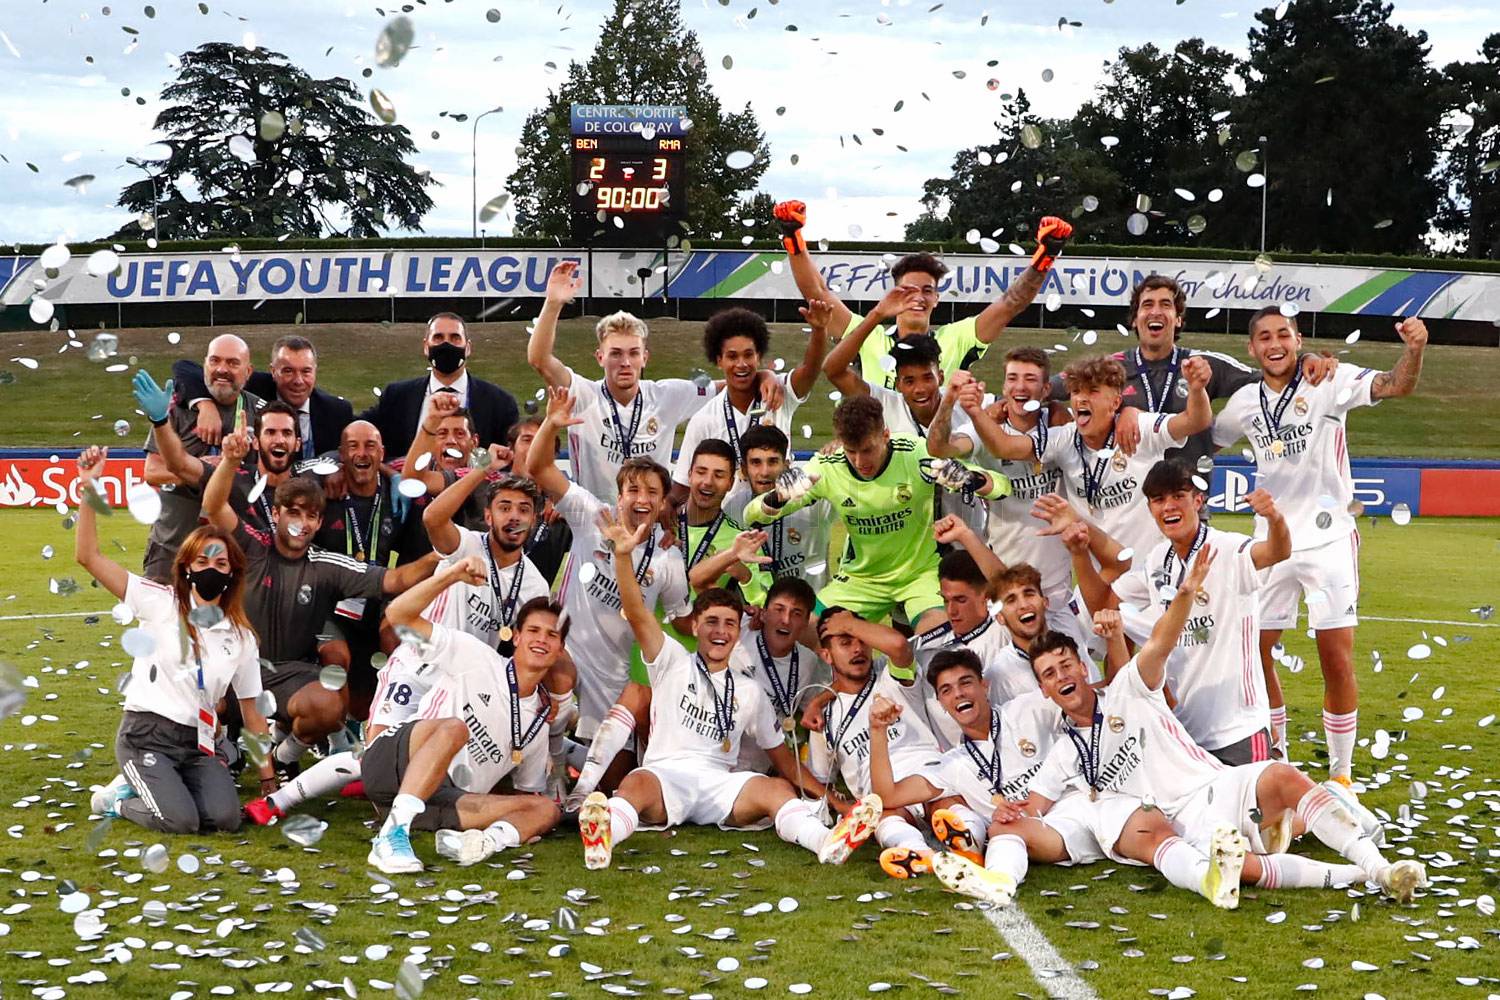 Youth League é cancelada pela UEFA por causa da covid-19